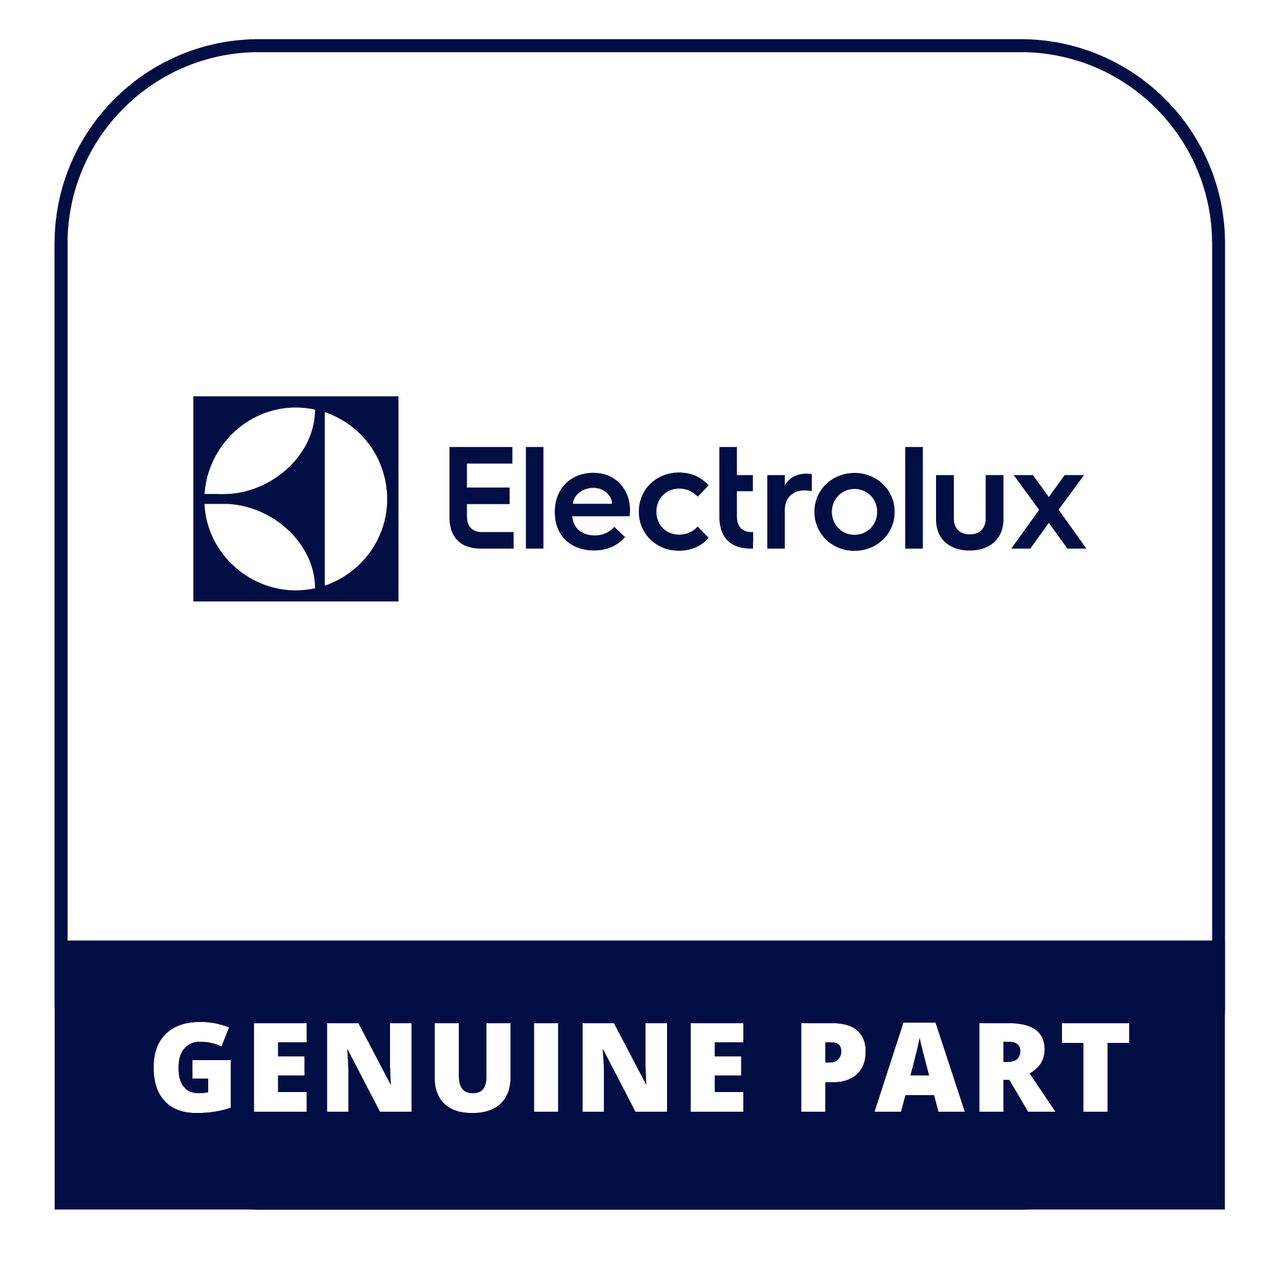 Frigidaire - Electrolux 318293811 - Switch - Genuine Electrolux Part